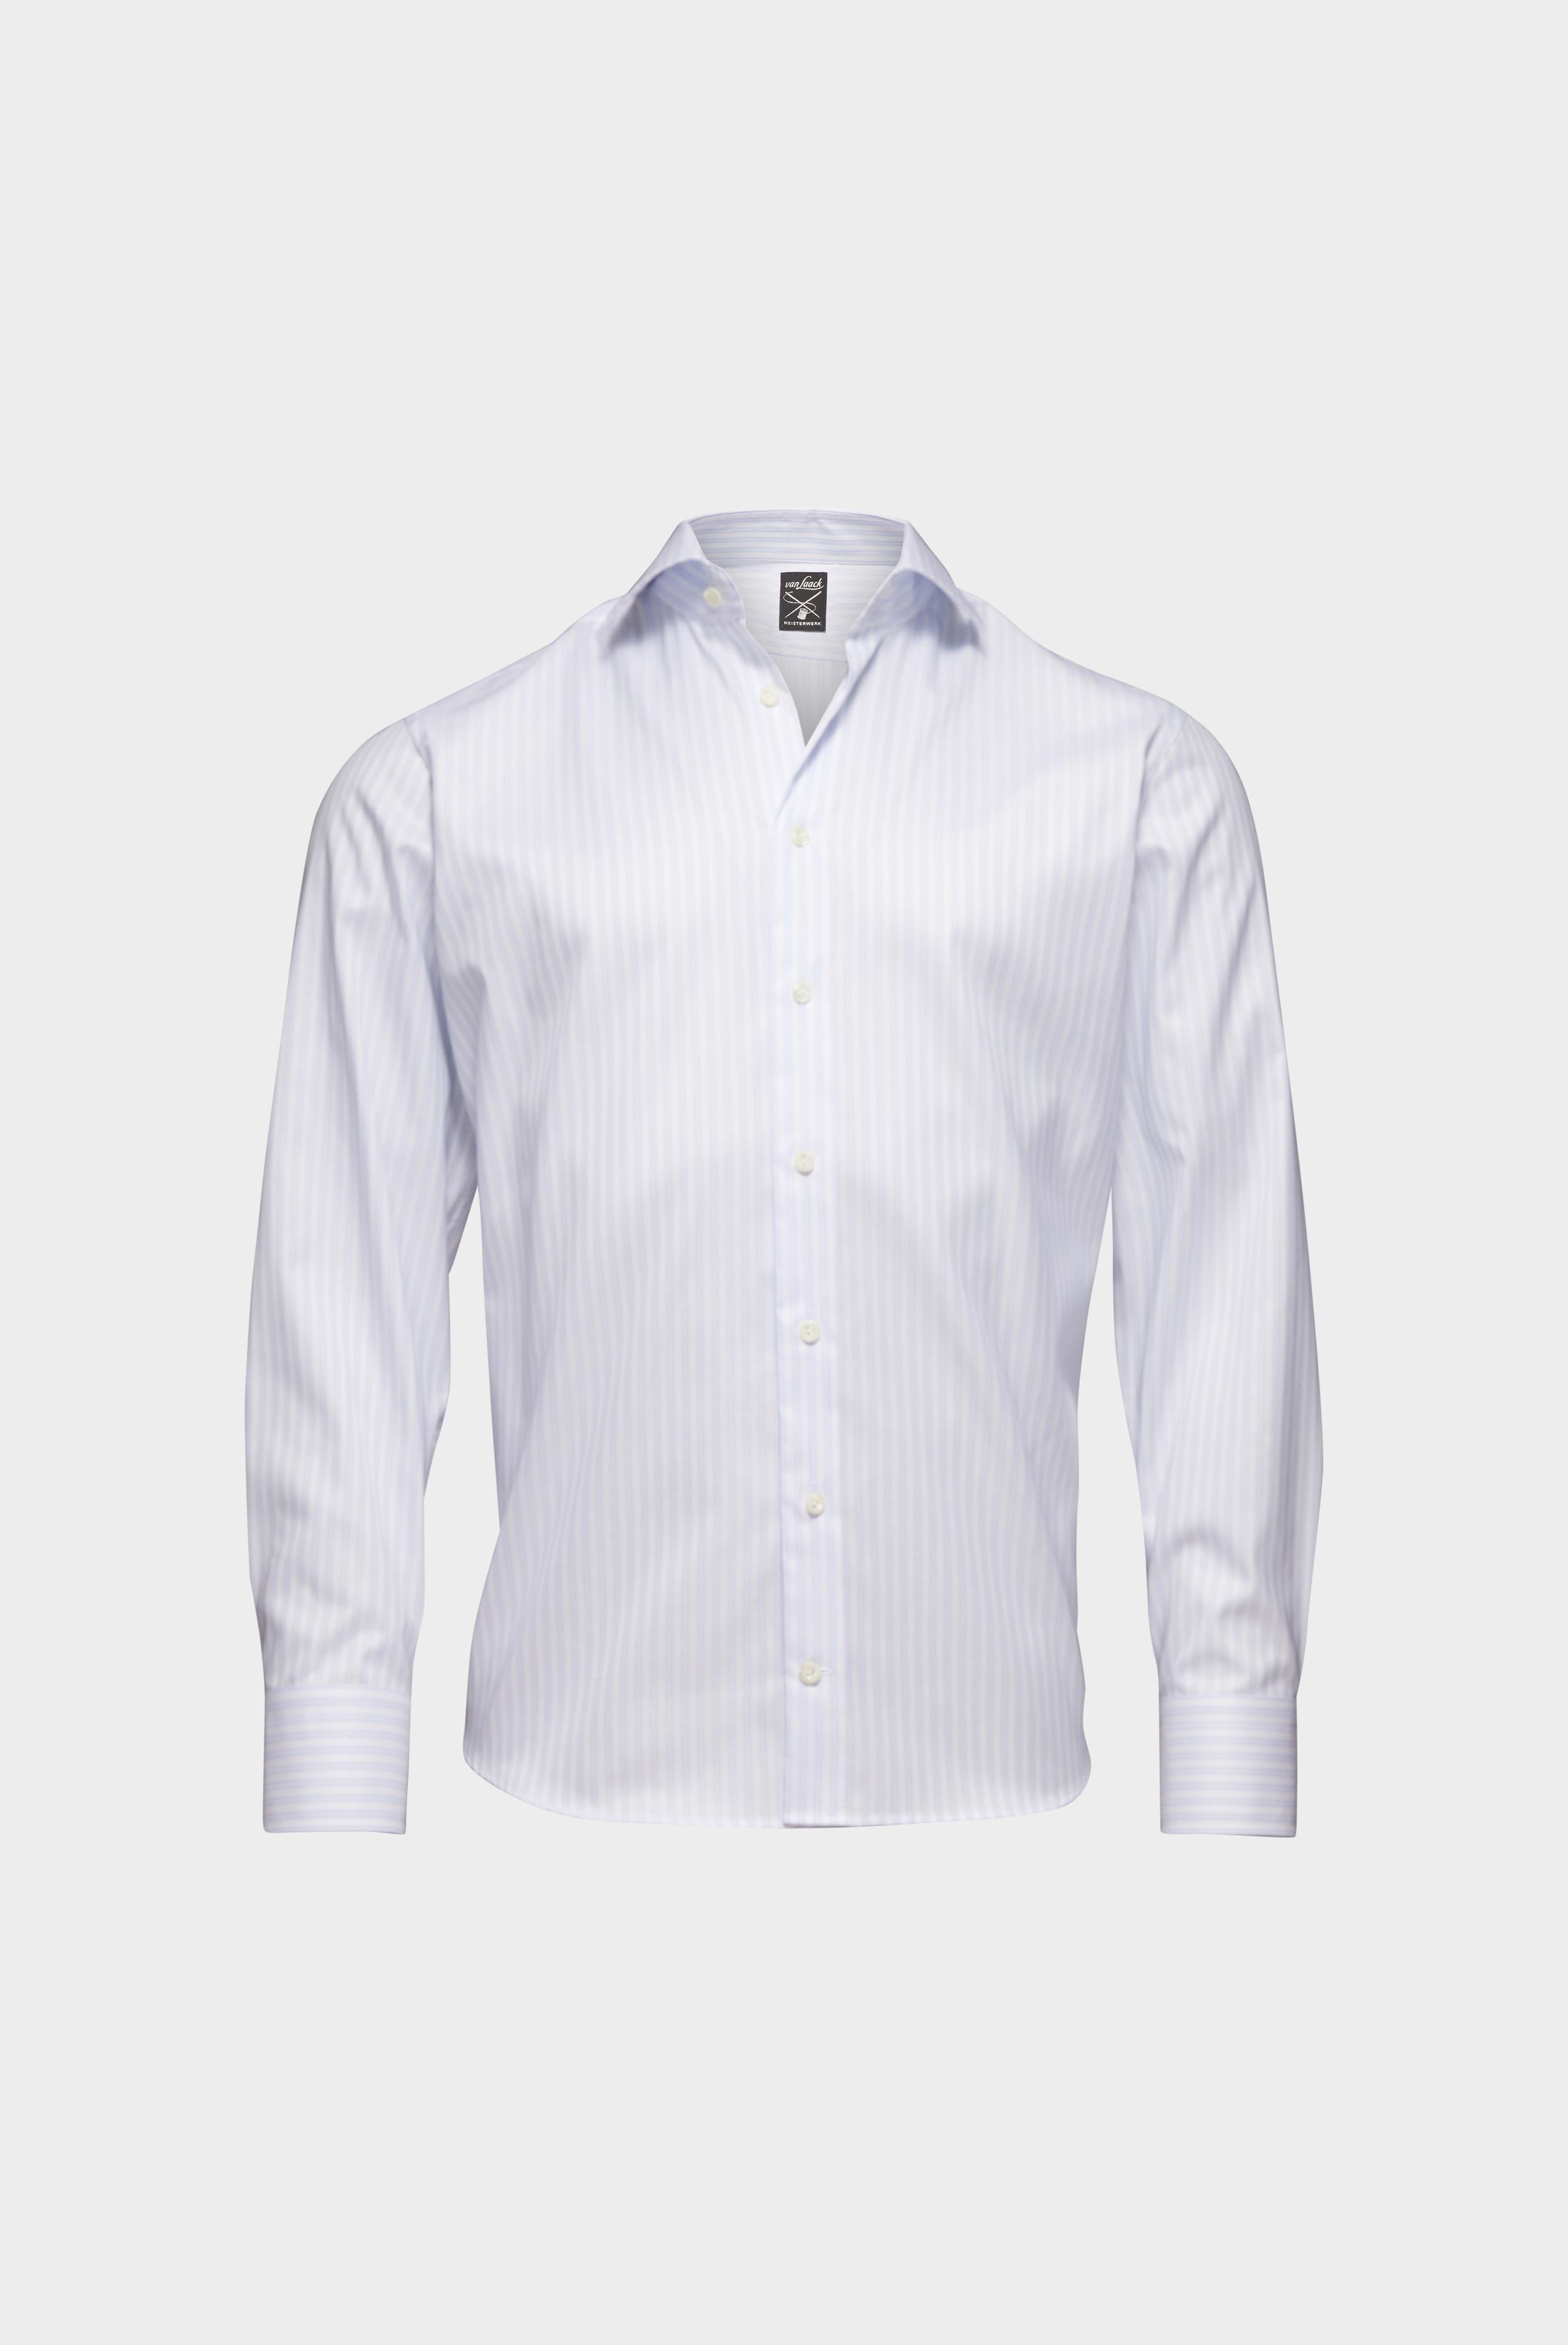 Bügelleichte Hemden+Bügelfreies Hemd mit Streifen Tailor Fit+20.2020.BQ.161106.007.43